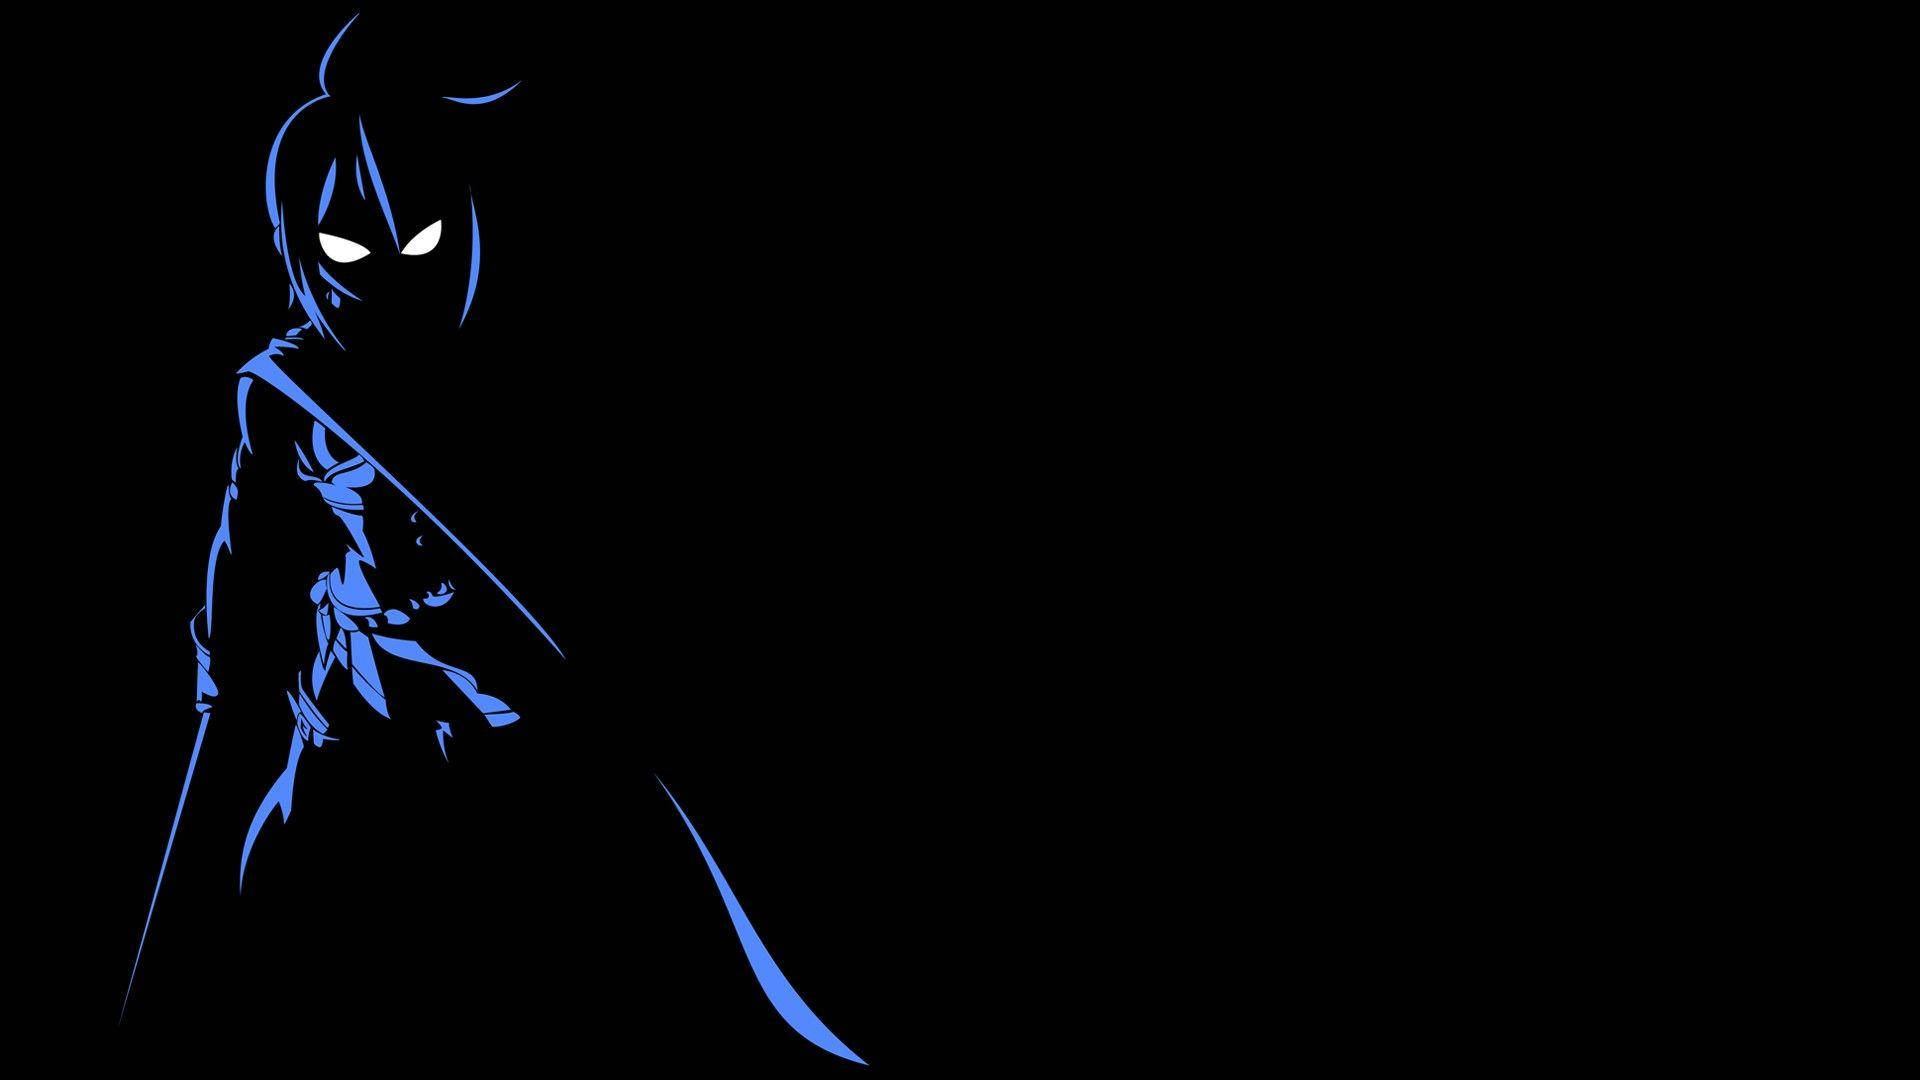 Sayaka Silhouette Dark Anime Aesthetic Desktop Wallpaper